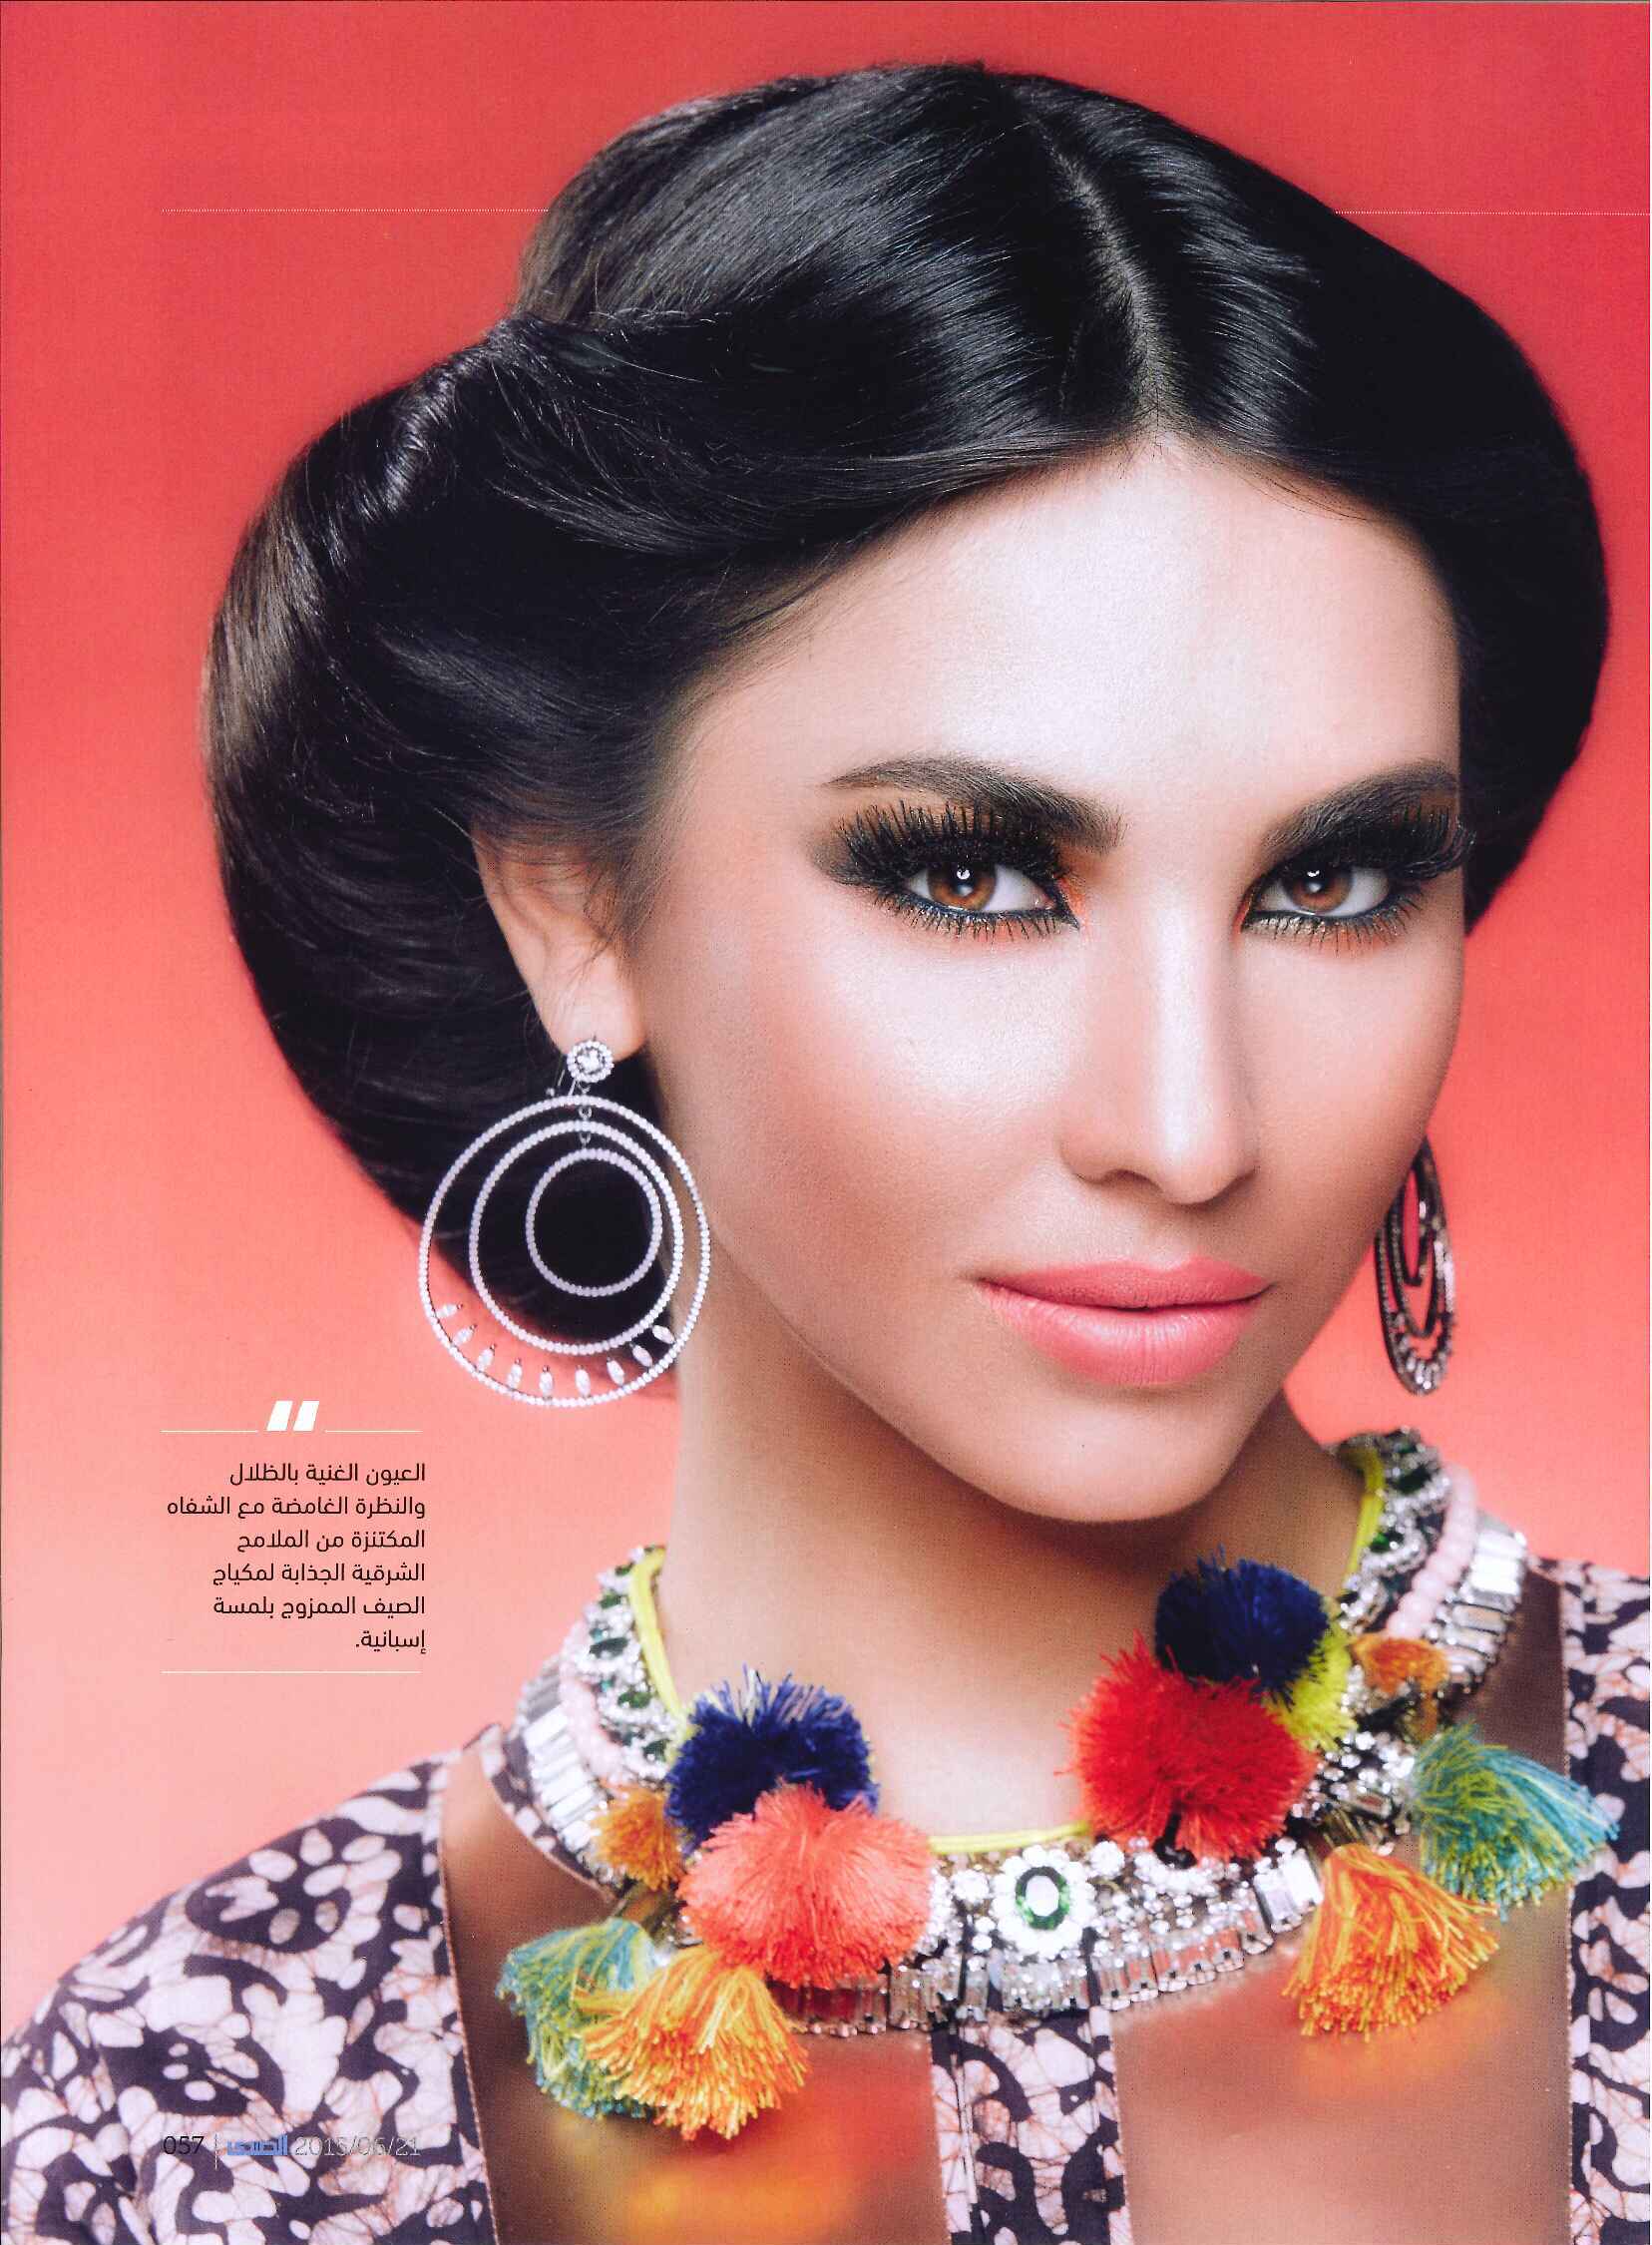 FLC Models & Talents - Print Campaigns - Al Sada - Erica June 15